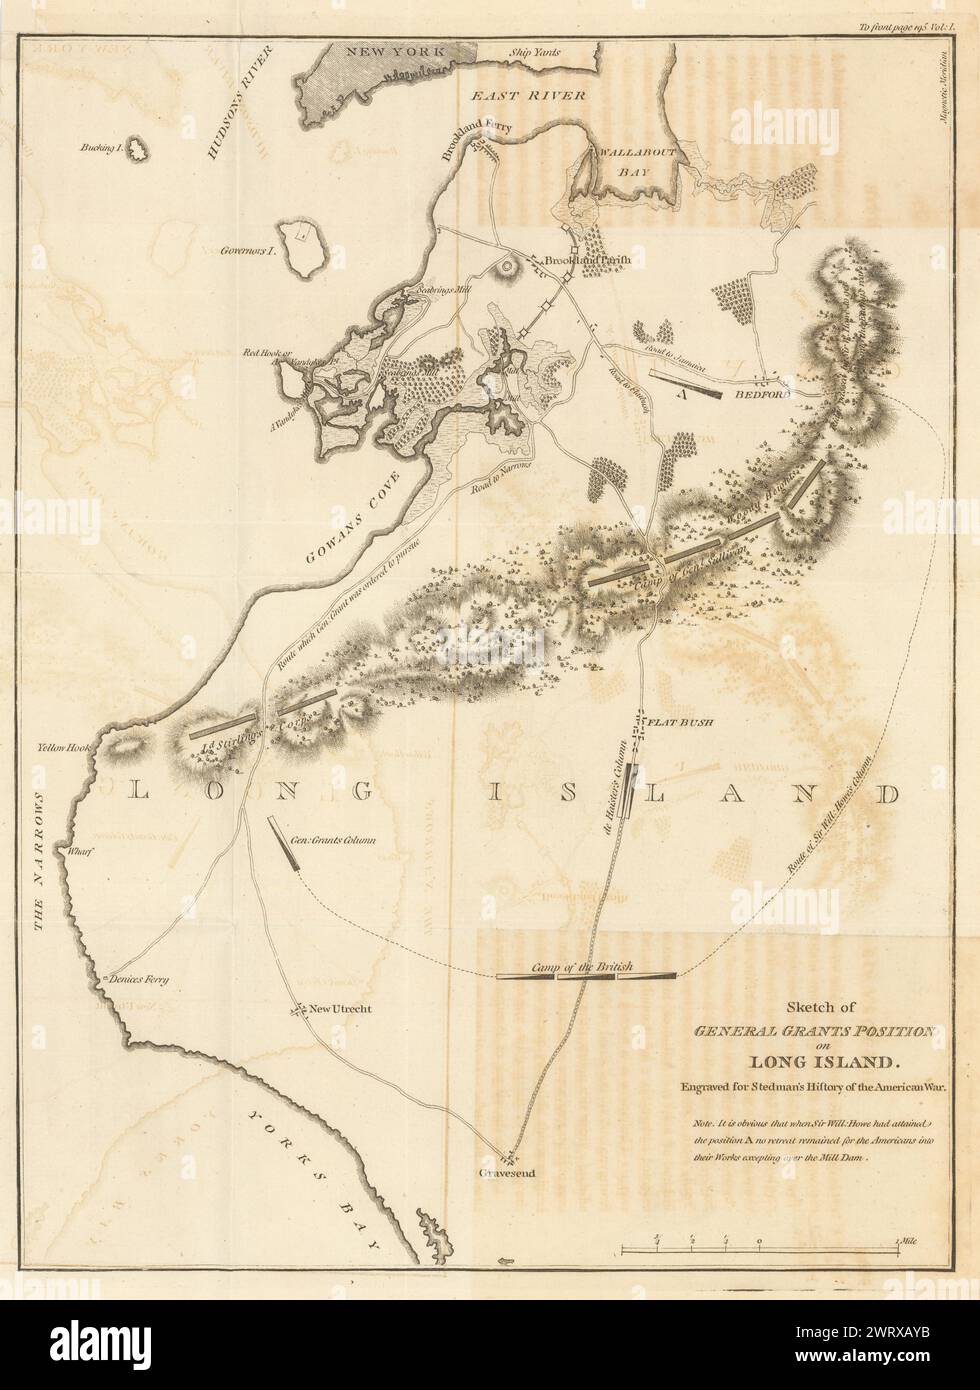 Schizzo della posizione del generale Grant a Long Island, 1776. STEDMAN 1794 vecchia mappa Foto Stock